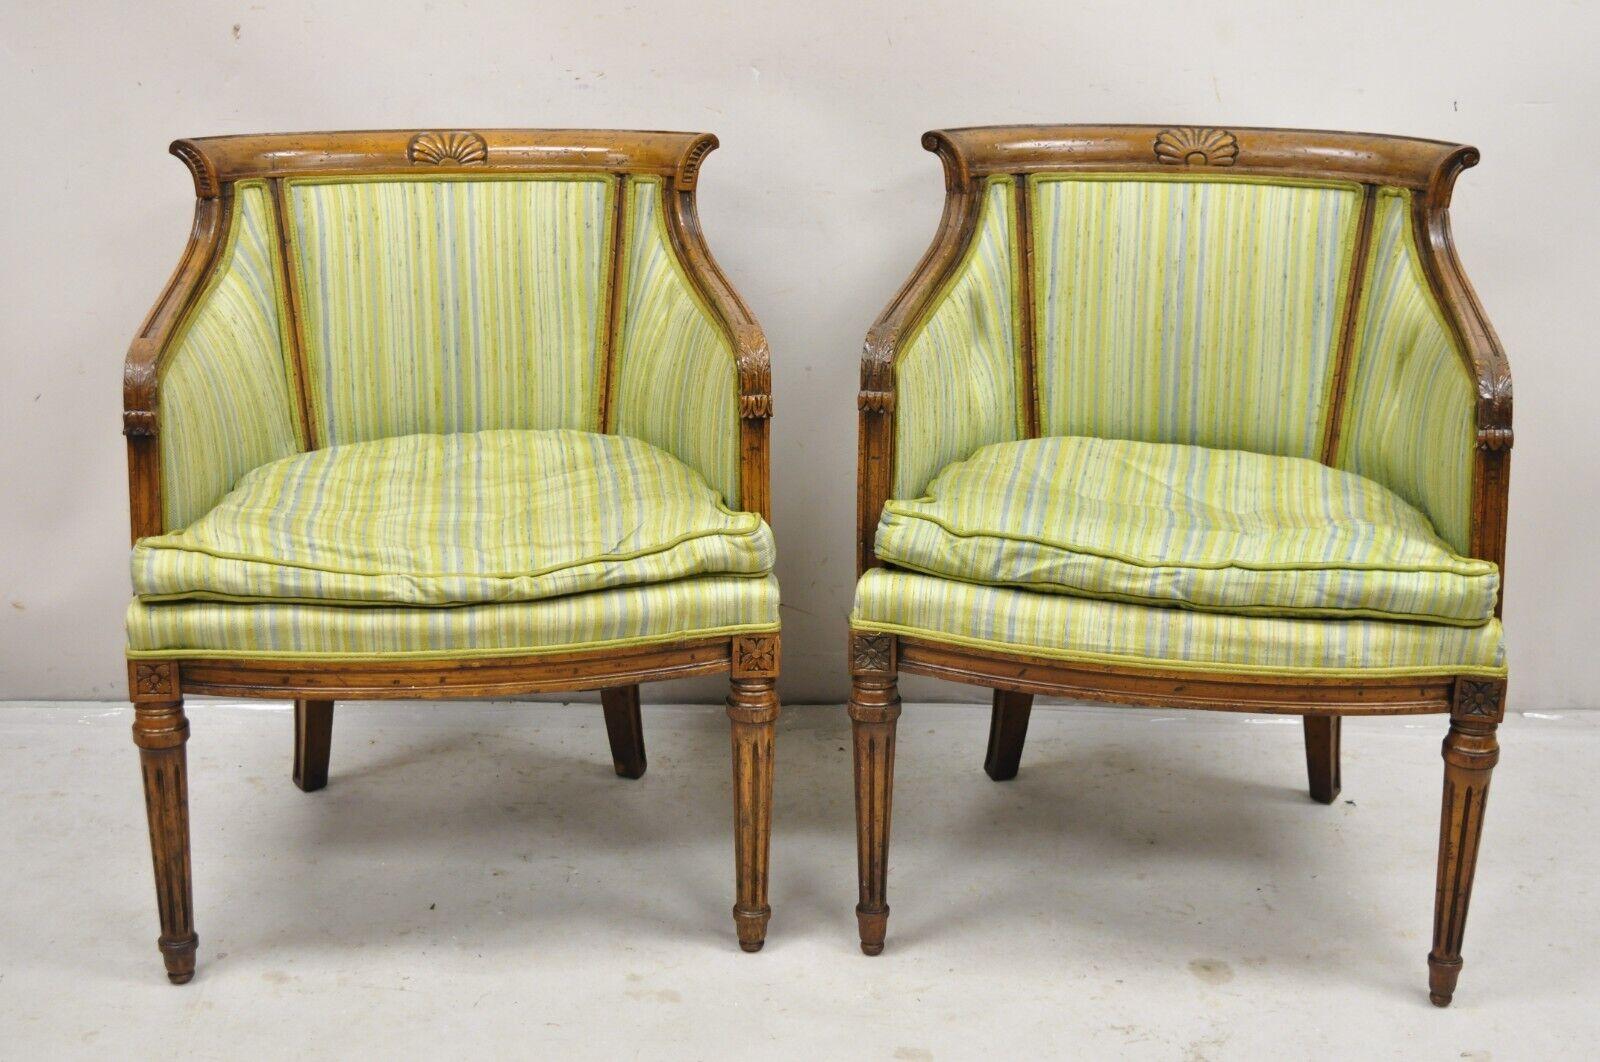 Antike italienische Regency Distressed geschnitzt Nussbaum Barrel Back Club Chairs - ein Paar. Massiv geschnitzter Nussbaumrahmen, gealterte Oberfläche, formschöne Rückenlehnen. Leichte Abweichungen in den Schnitzdetails und der Farbe zwischen den